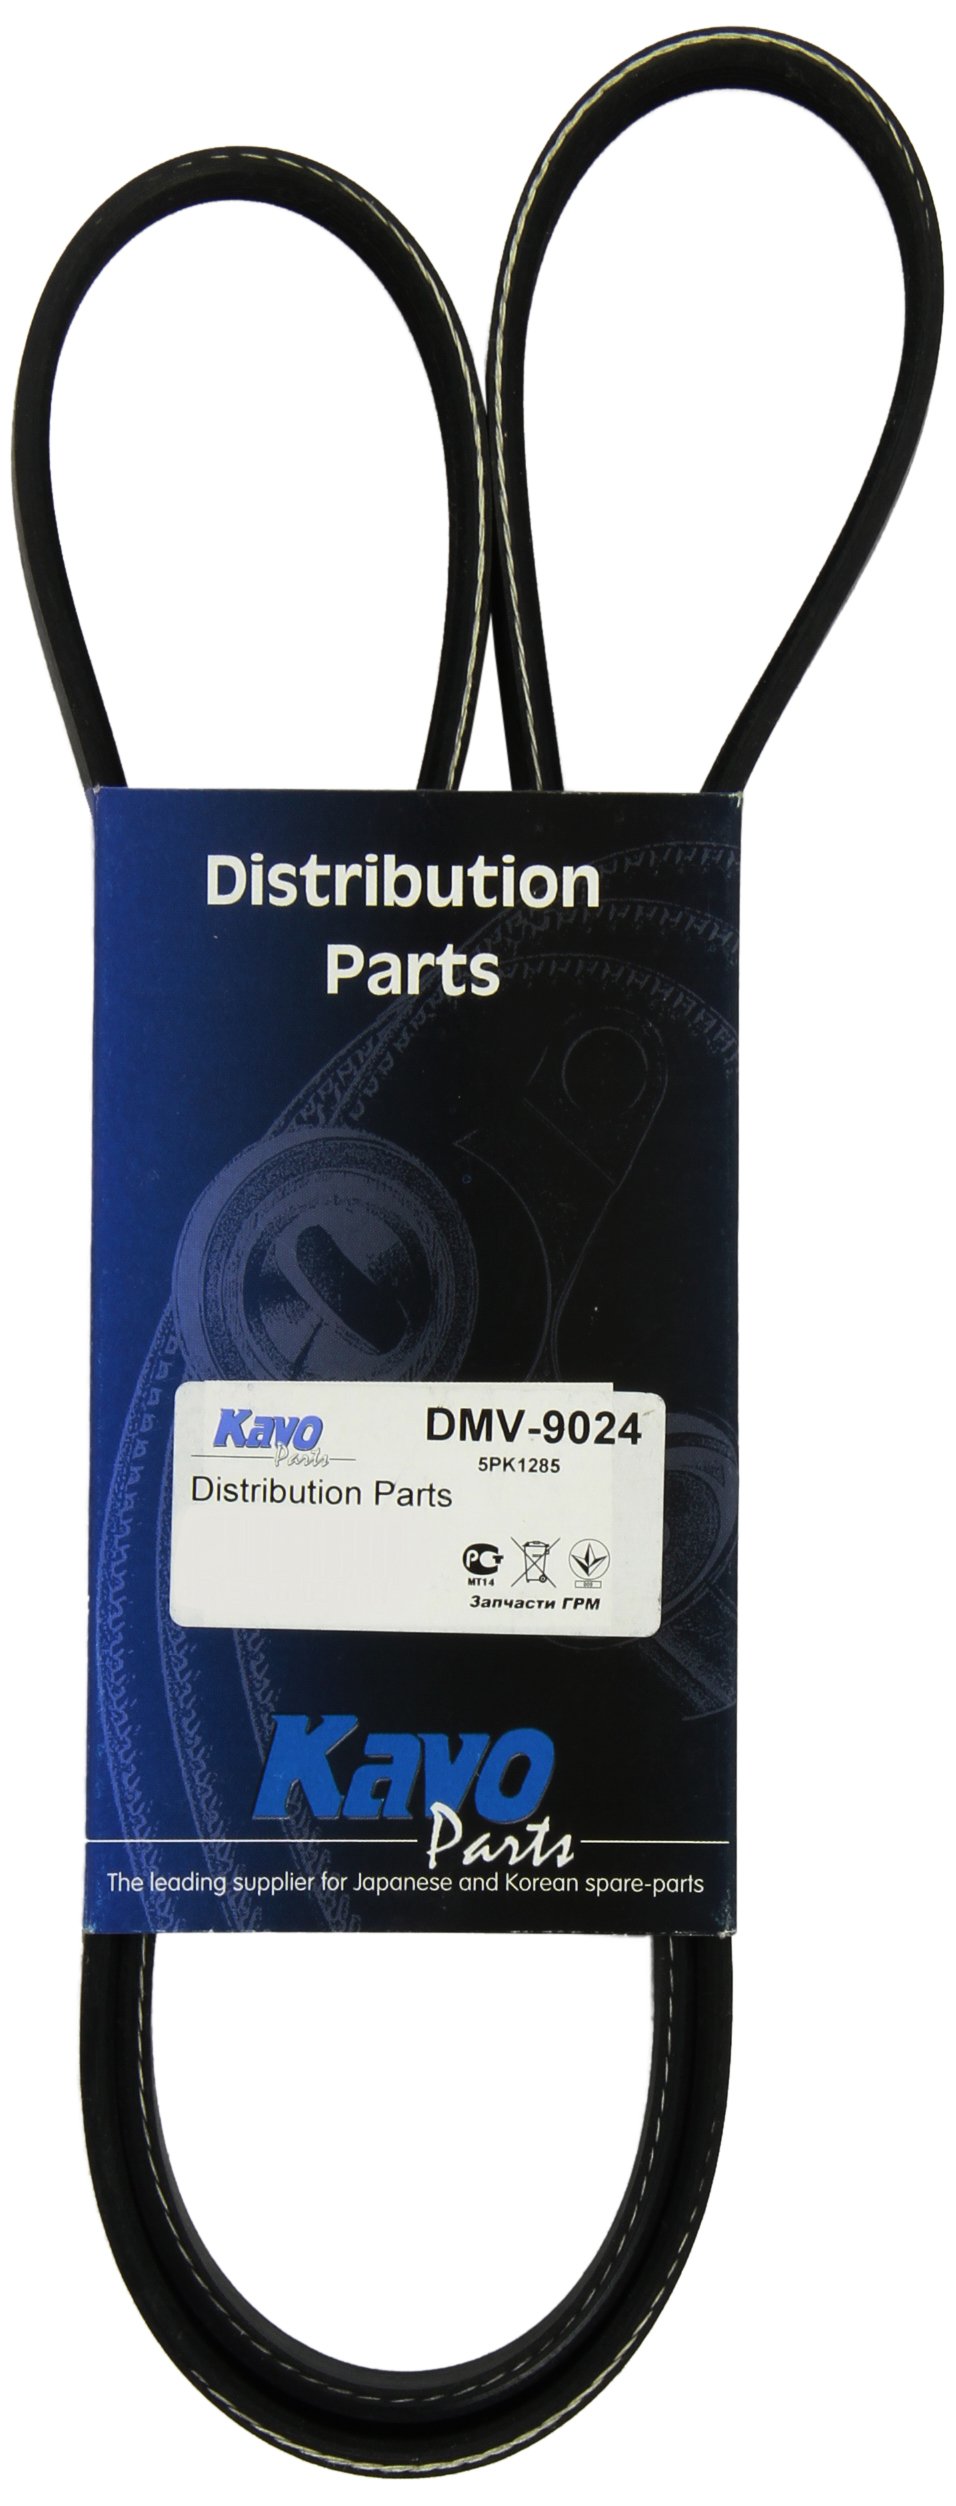 Kavo Parts DMV-9024 Keilrippenriem für Toyota Supra/Nissan Pathfinder von Kavo Parts